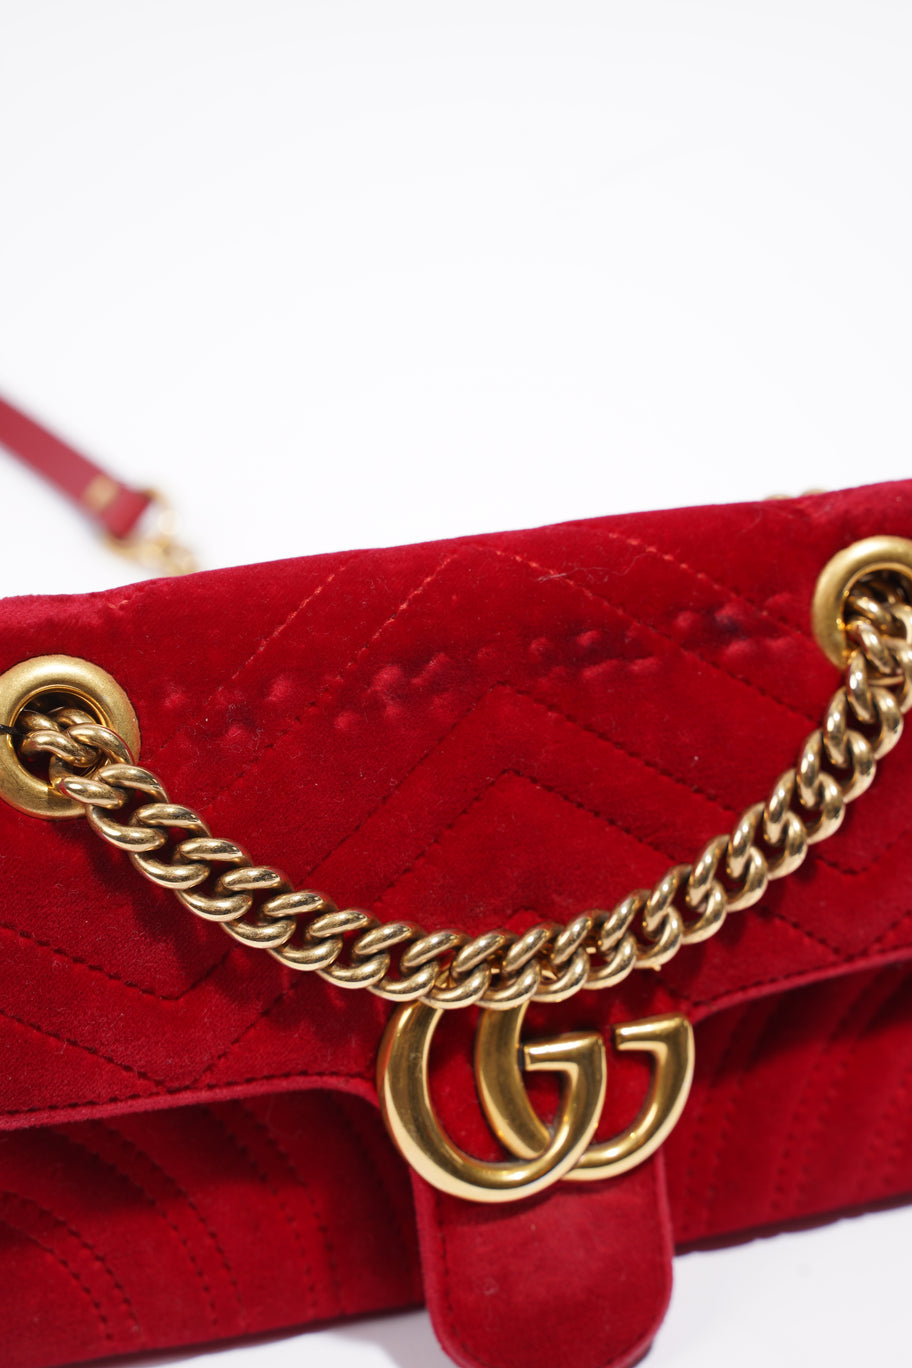 GG Marmont Bag Red Velvet Mini Image 14